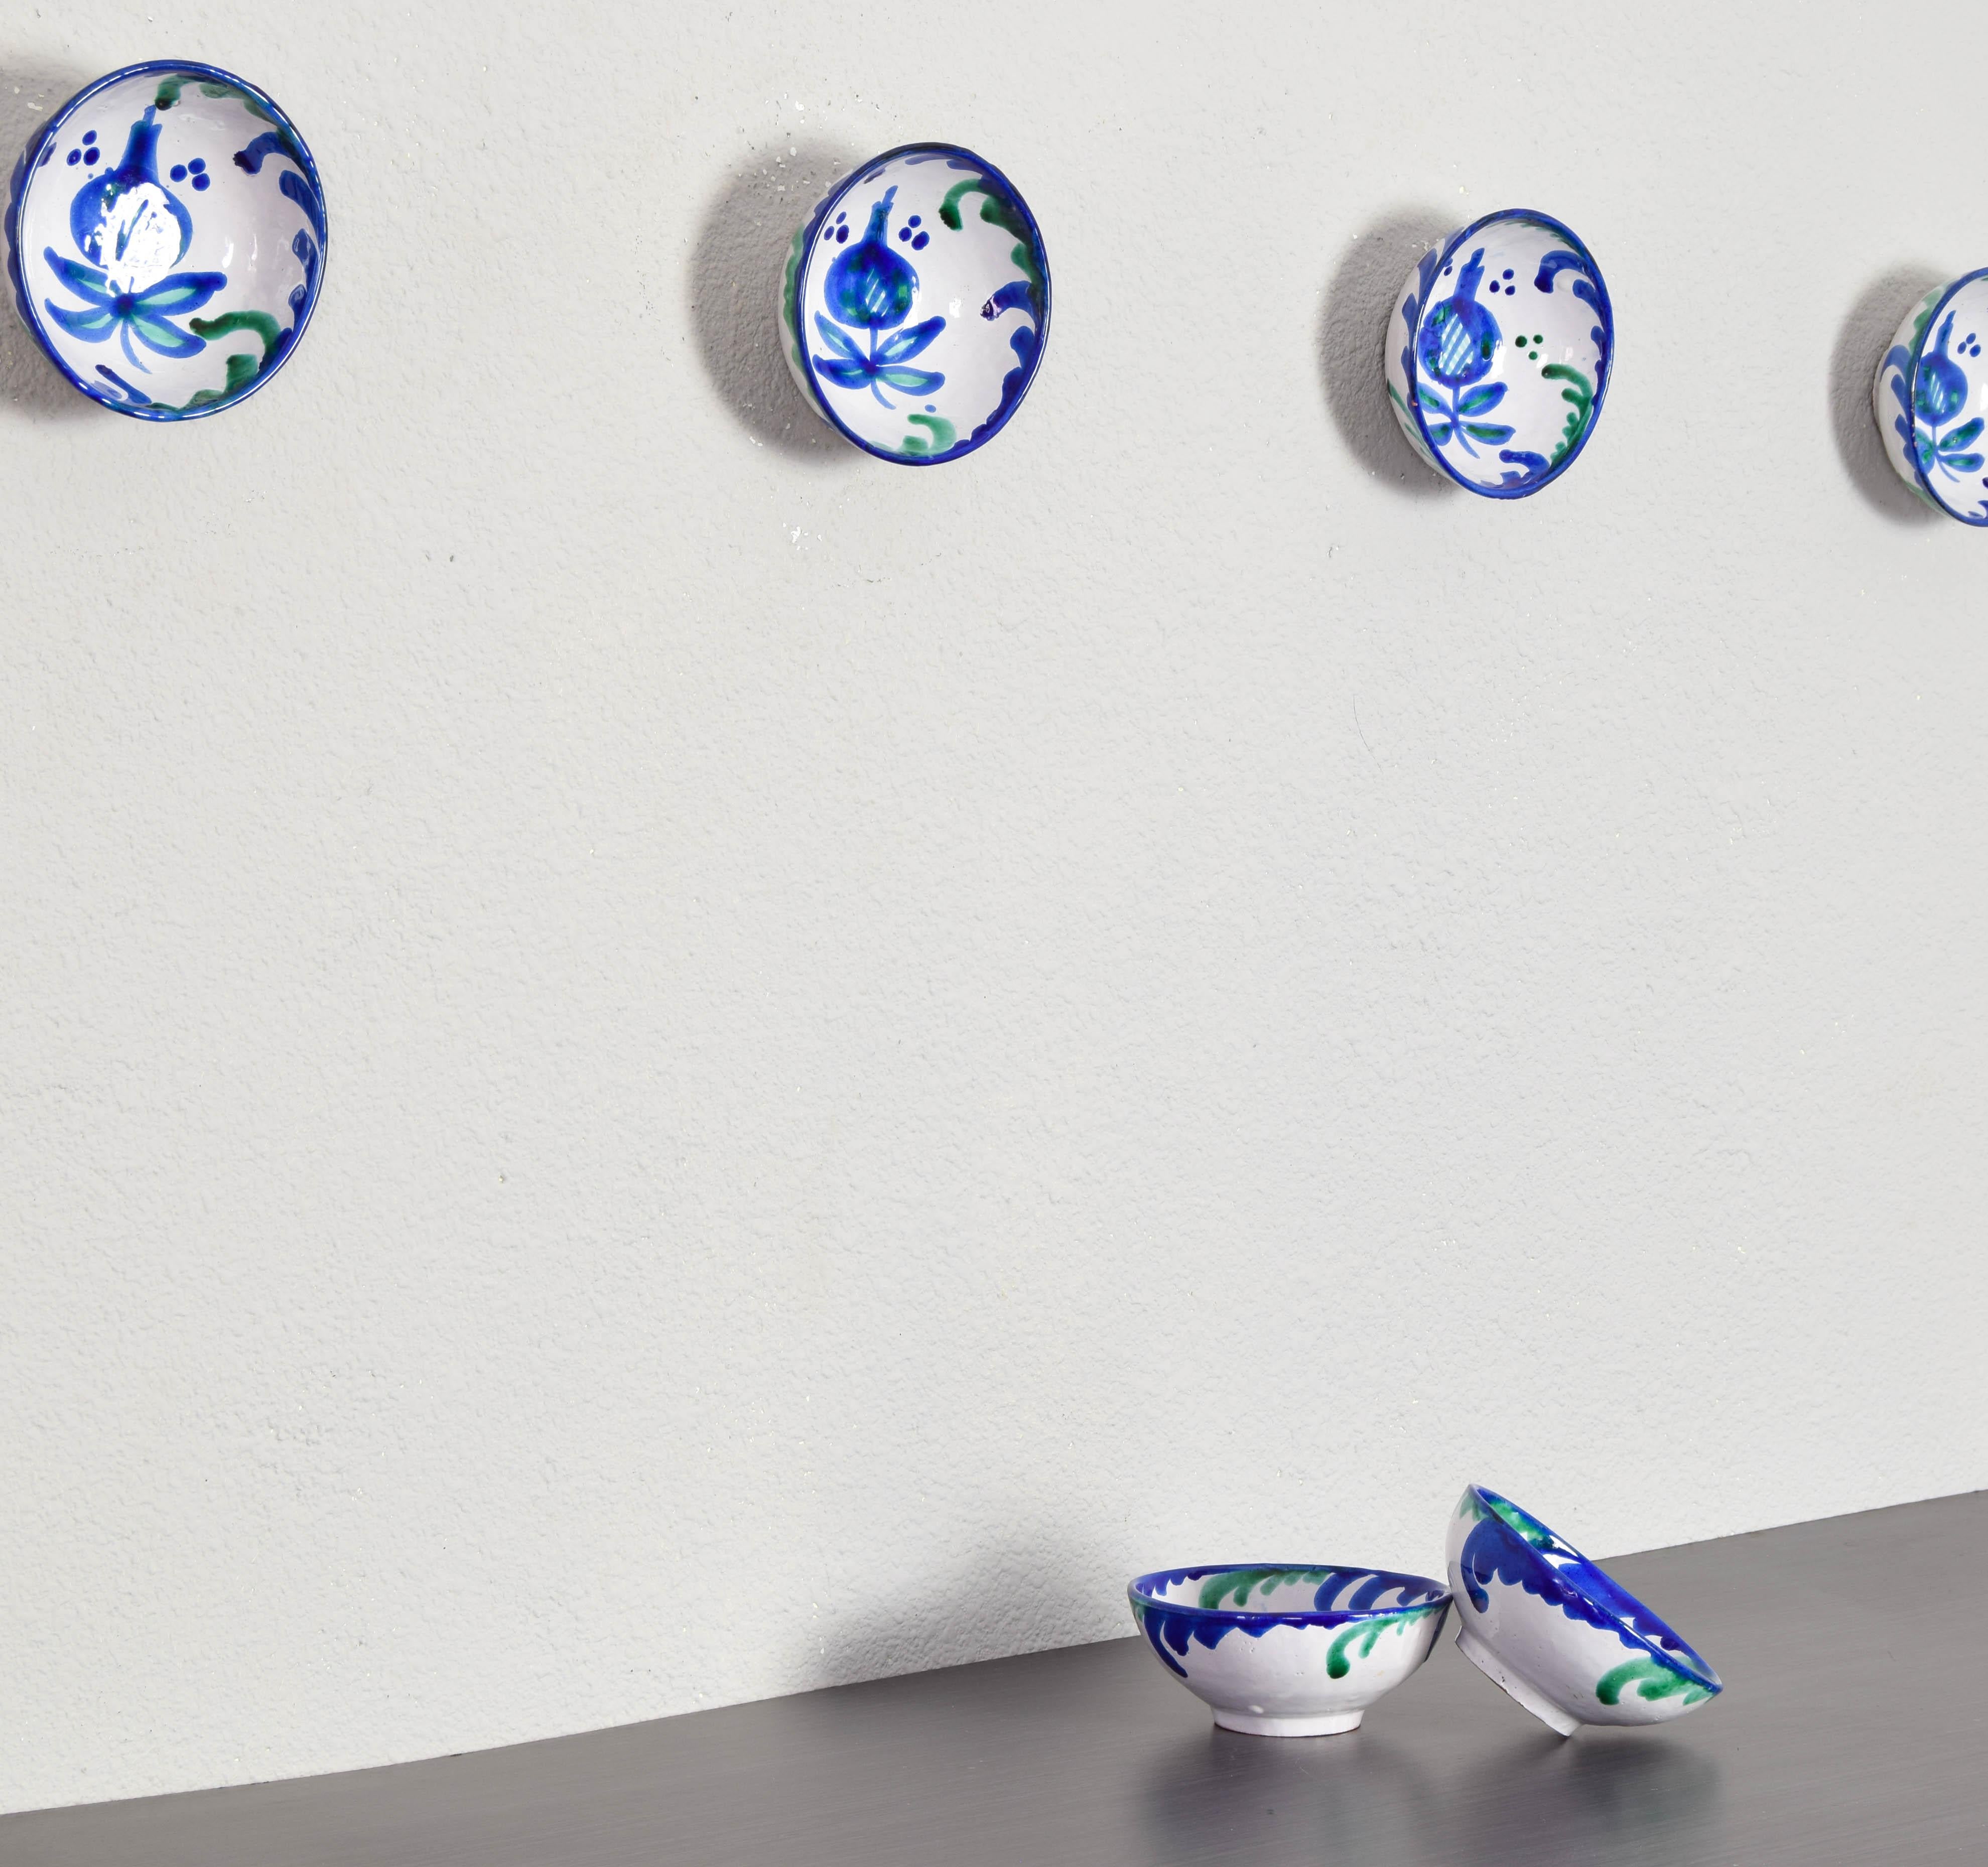 Satz von sechs dekorativen blau, grün und weiß glasierten Terrakotta-Keramikschalen spanischen Fajalauza aus dem 20. Jahrhundert hergestellt und handbemalt.
Der Fajalauza-Stil hat seinen Ursprung im 16. Jahrhundert im Viertel Albaicín in Granada,